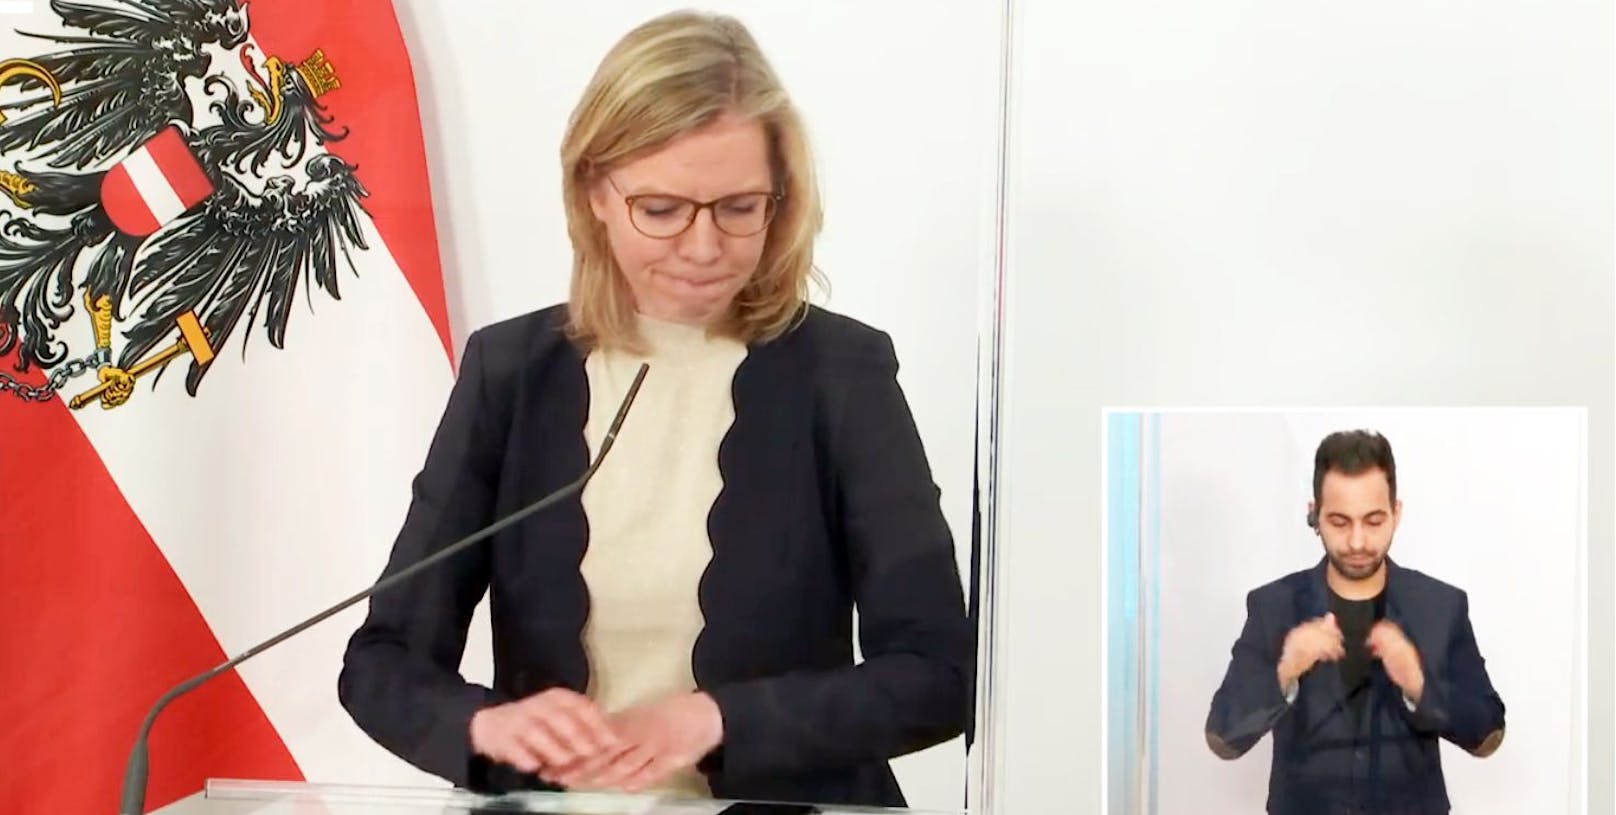 Emotionaler Moment bei der Pressekonferenz: Klimaschutzministerin Leonore Gewessler trauert um die in Wien ermordete Frau (30. April 2021)